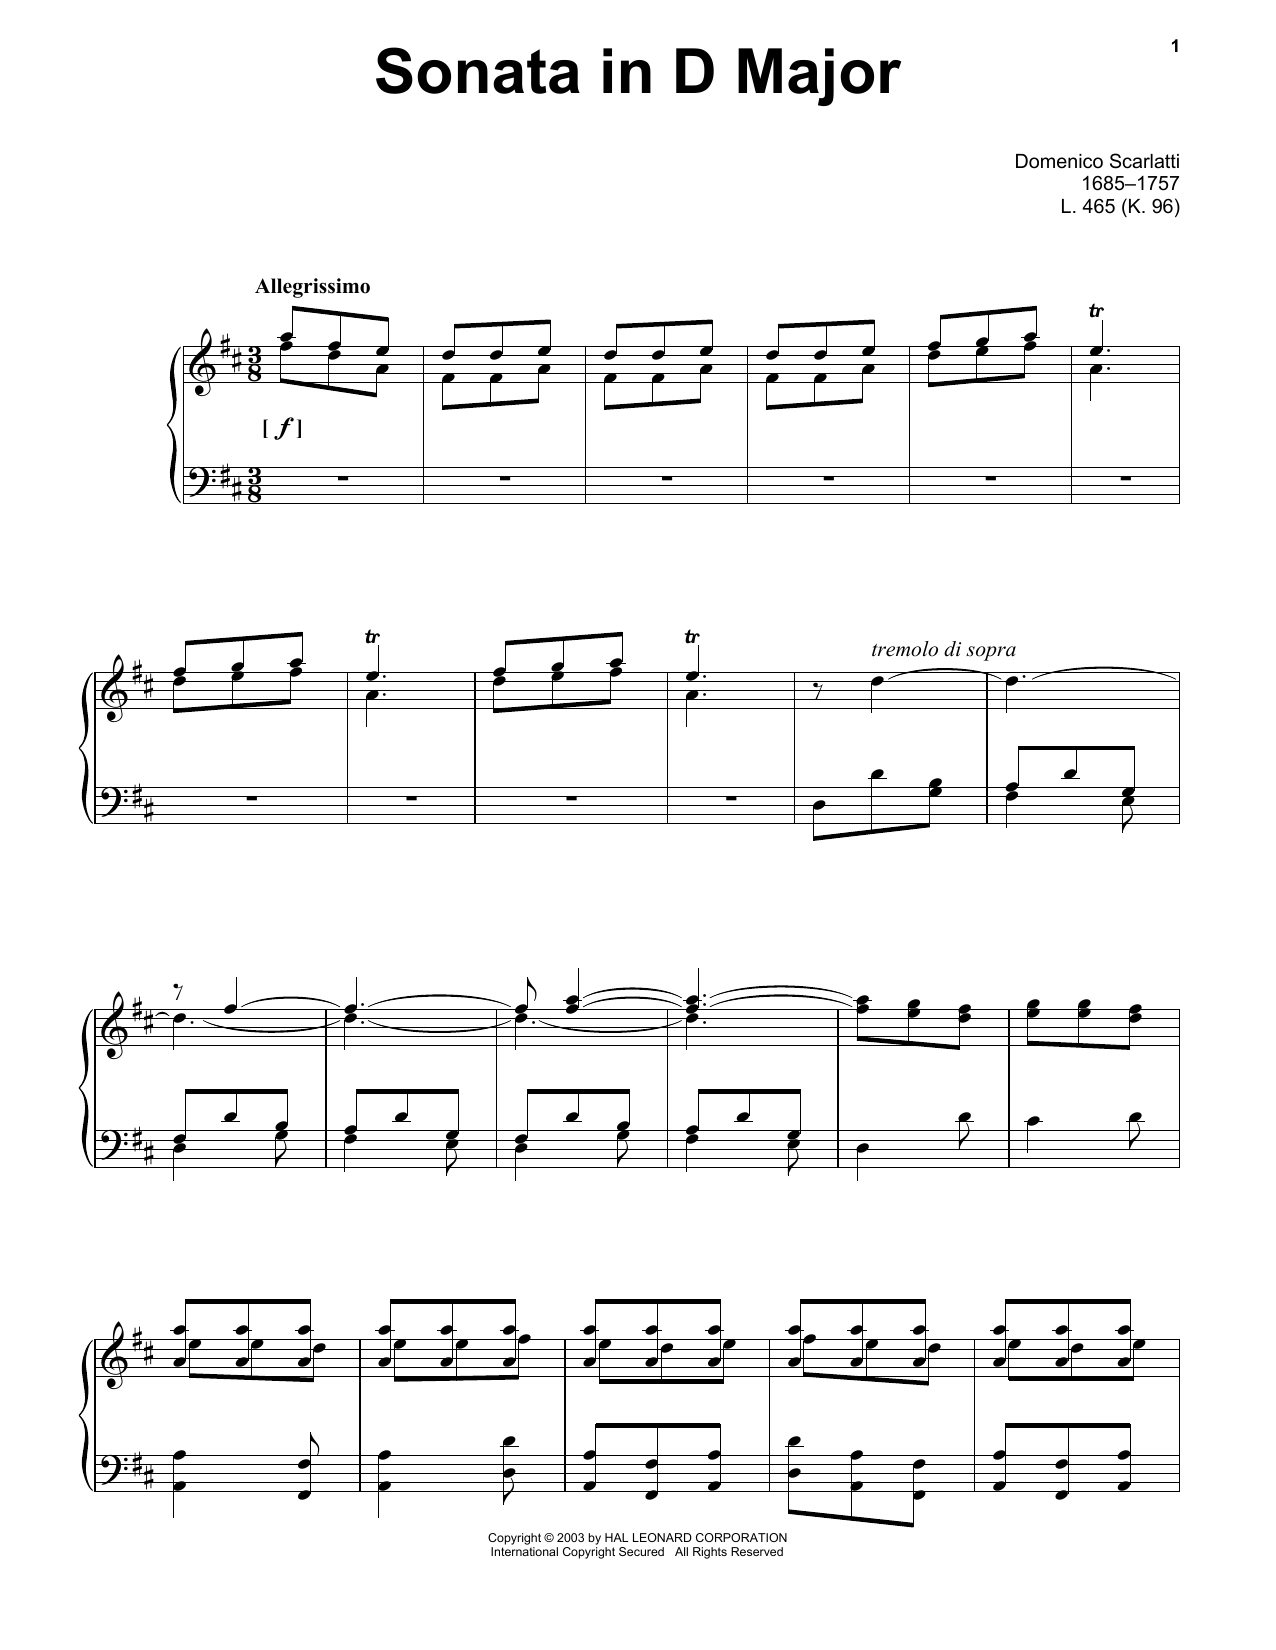 Domenico Scarlatti Sonata In D Major, K. 96 Sheet Music Notes & Chords for Piano Solo - Download or Print PDF